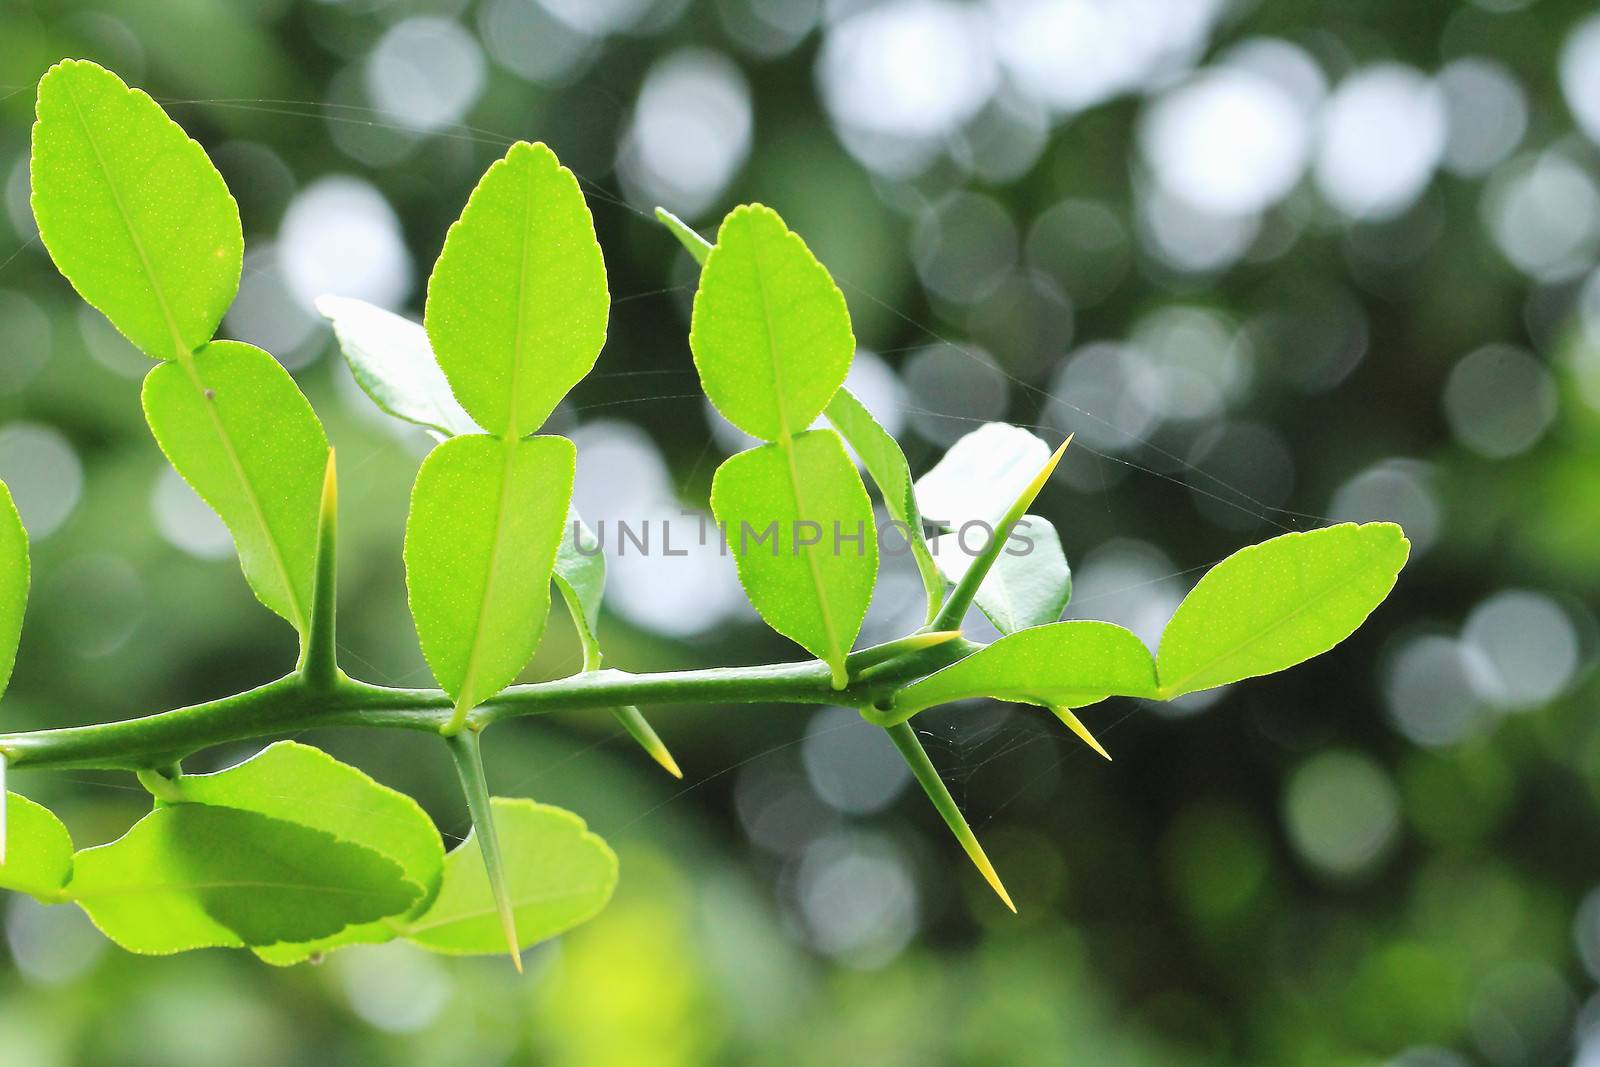 Kaffir lime or bergamot leaves